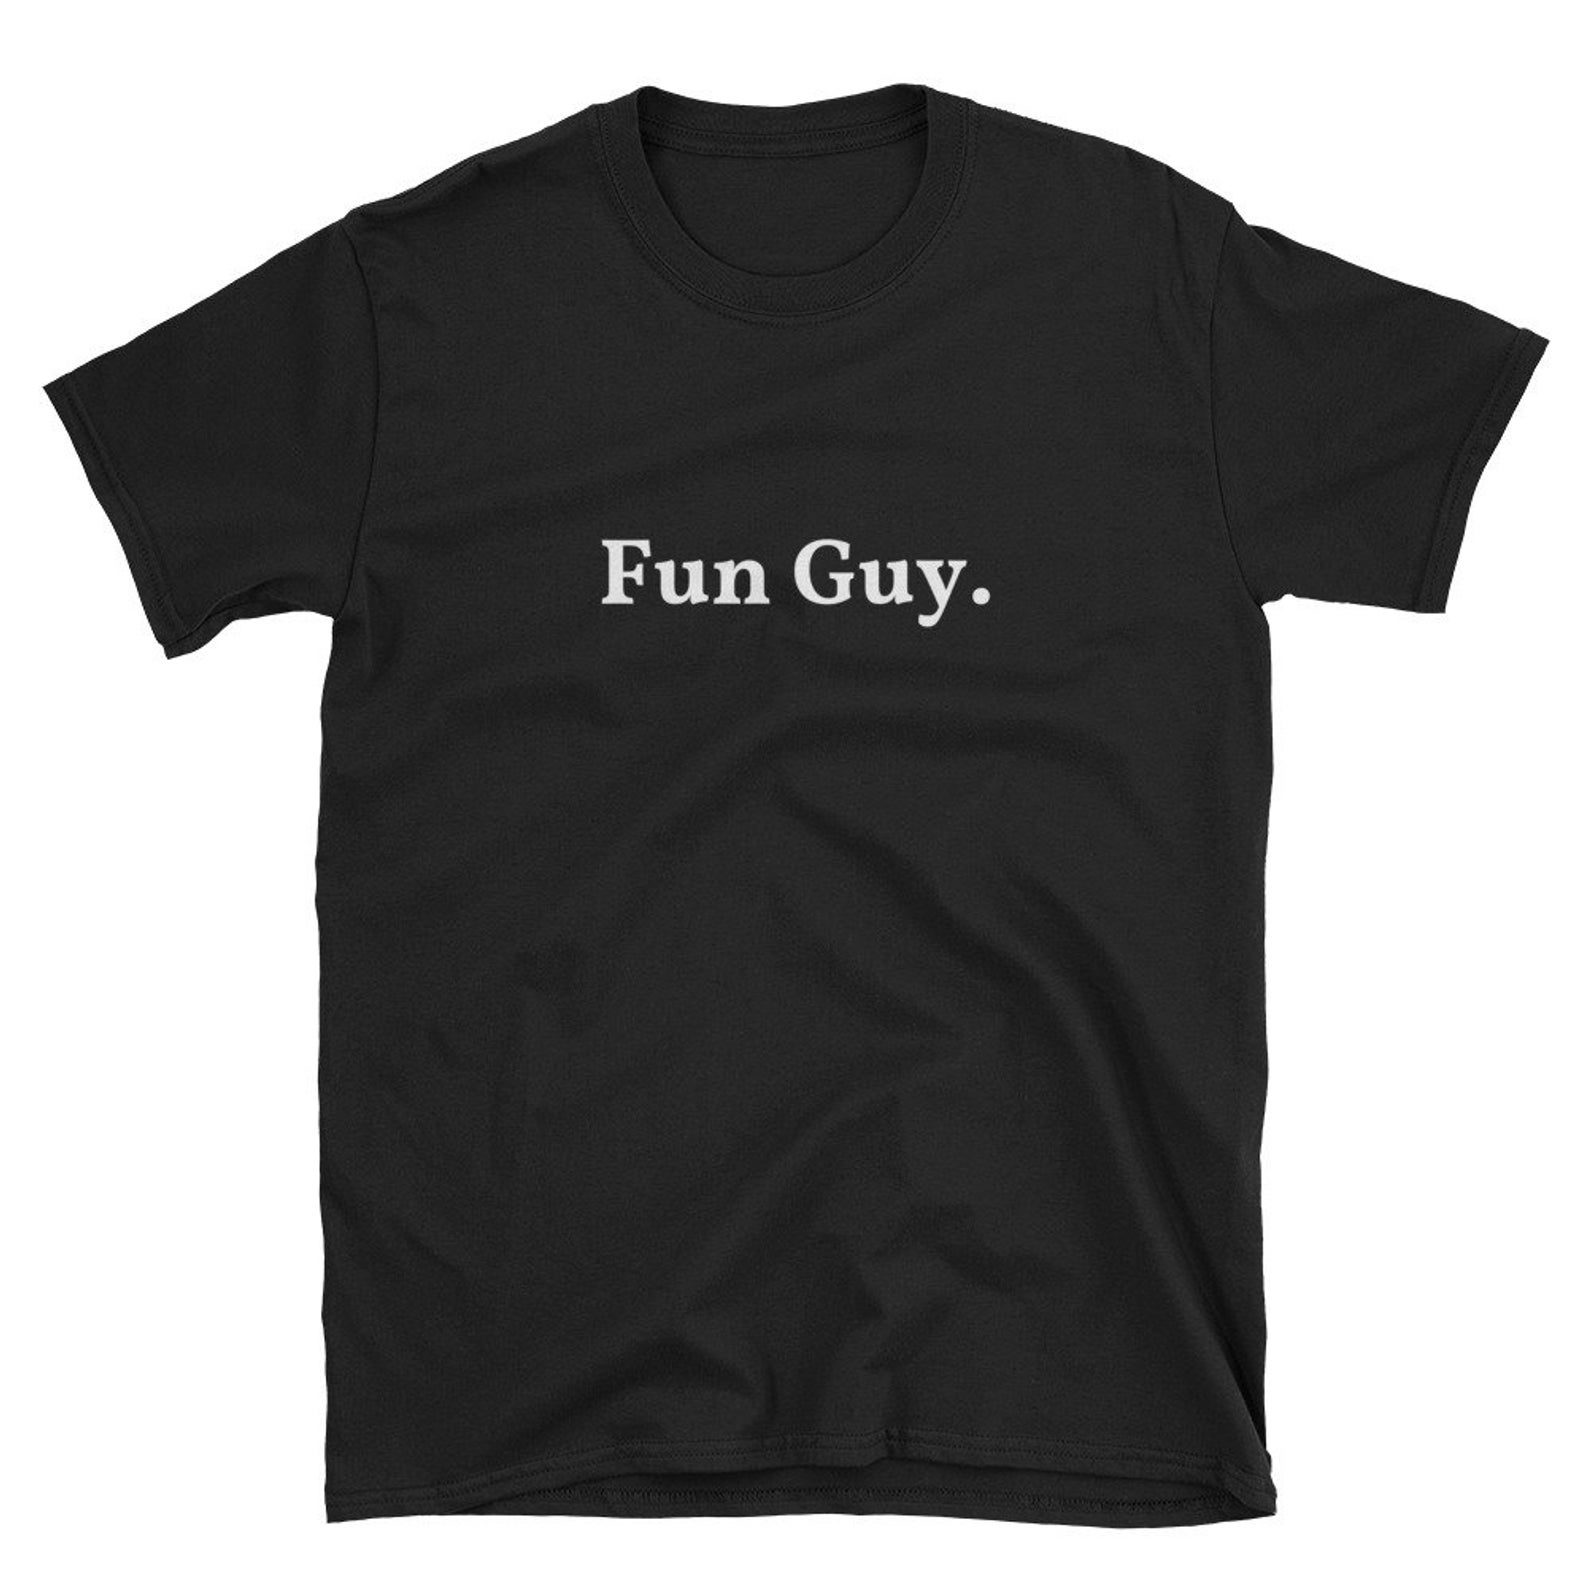 fun guy nb shirt, OFF 77%,Buy!